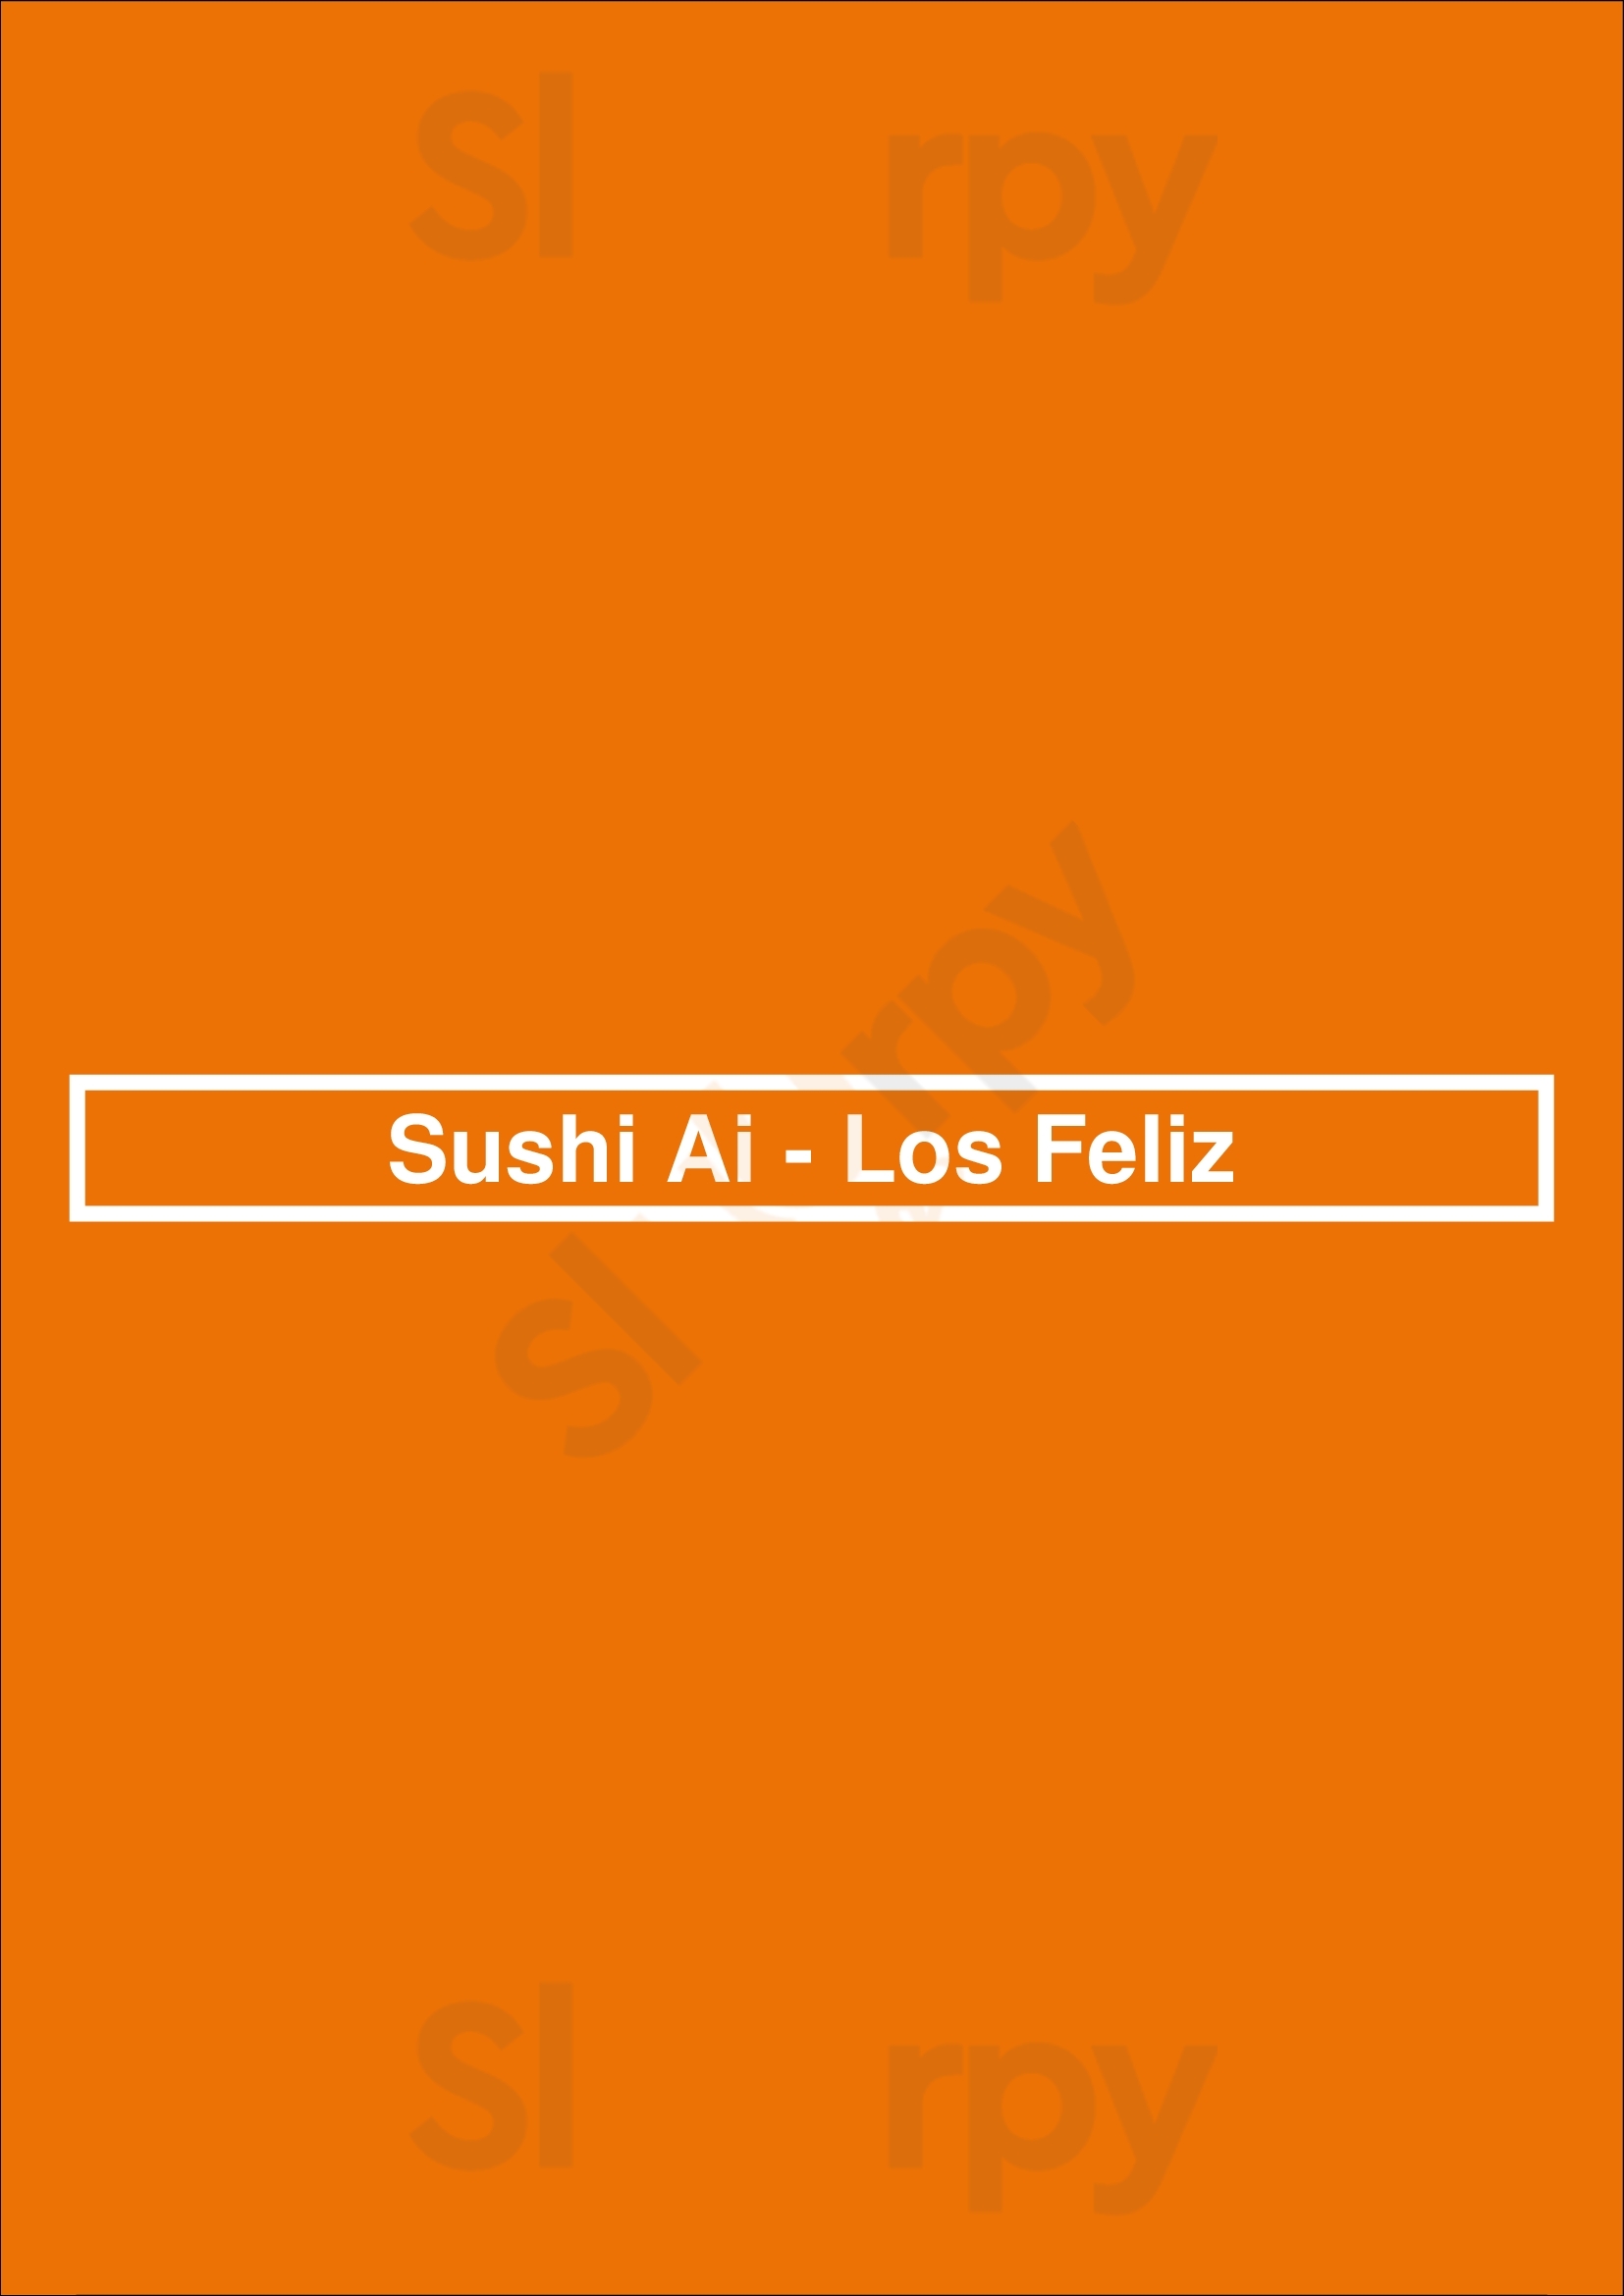 Sushi Ai - Los Feliz Los Angeles Menu - 1